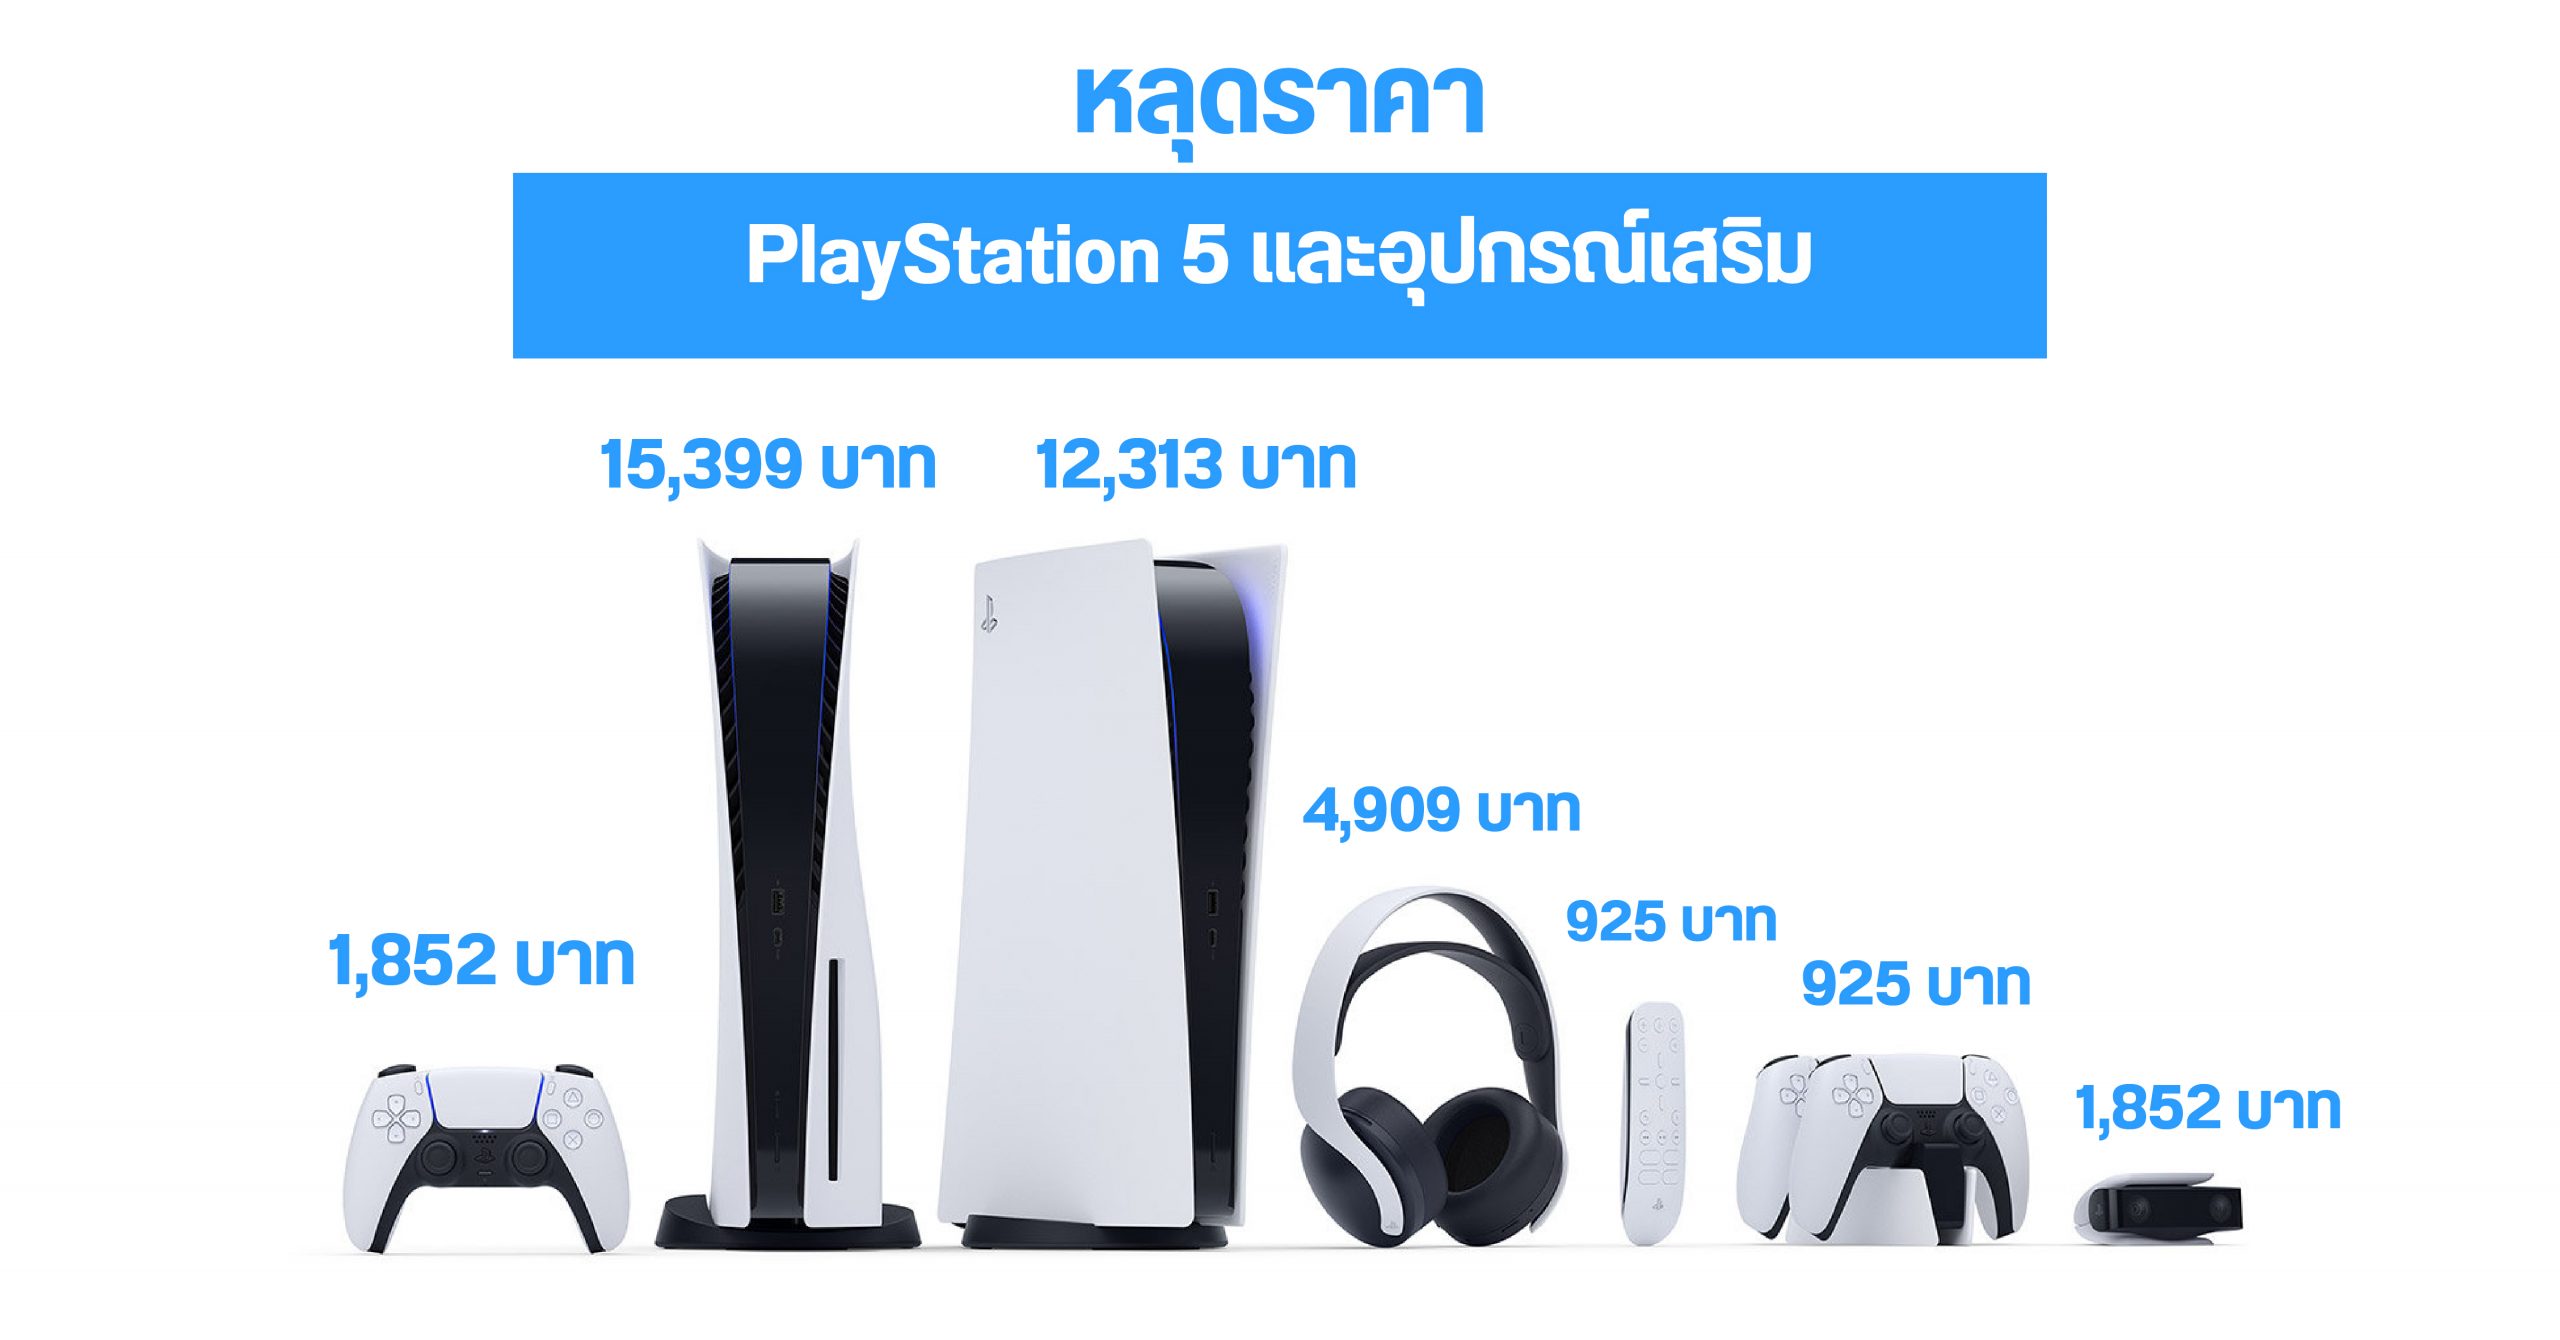 หลุดราคาเครื่อง PlayStation 5 เริ่มต้นราว 12,000 บาท พร้อมข้อมูลอุปกรณ์เสริมที่จะวางจำหน่ายพร้อมกัน